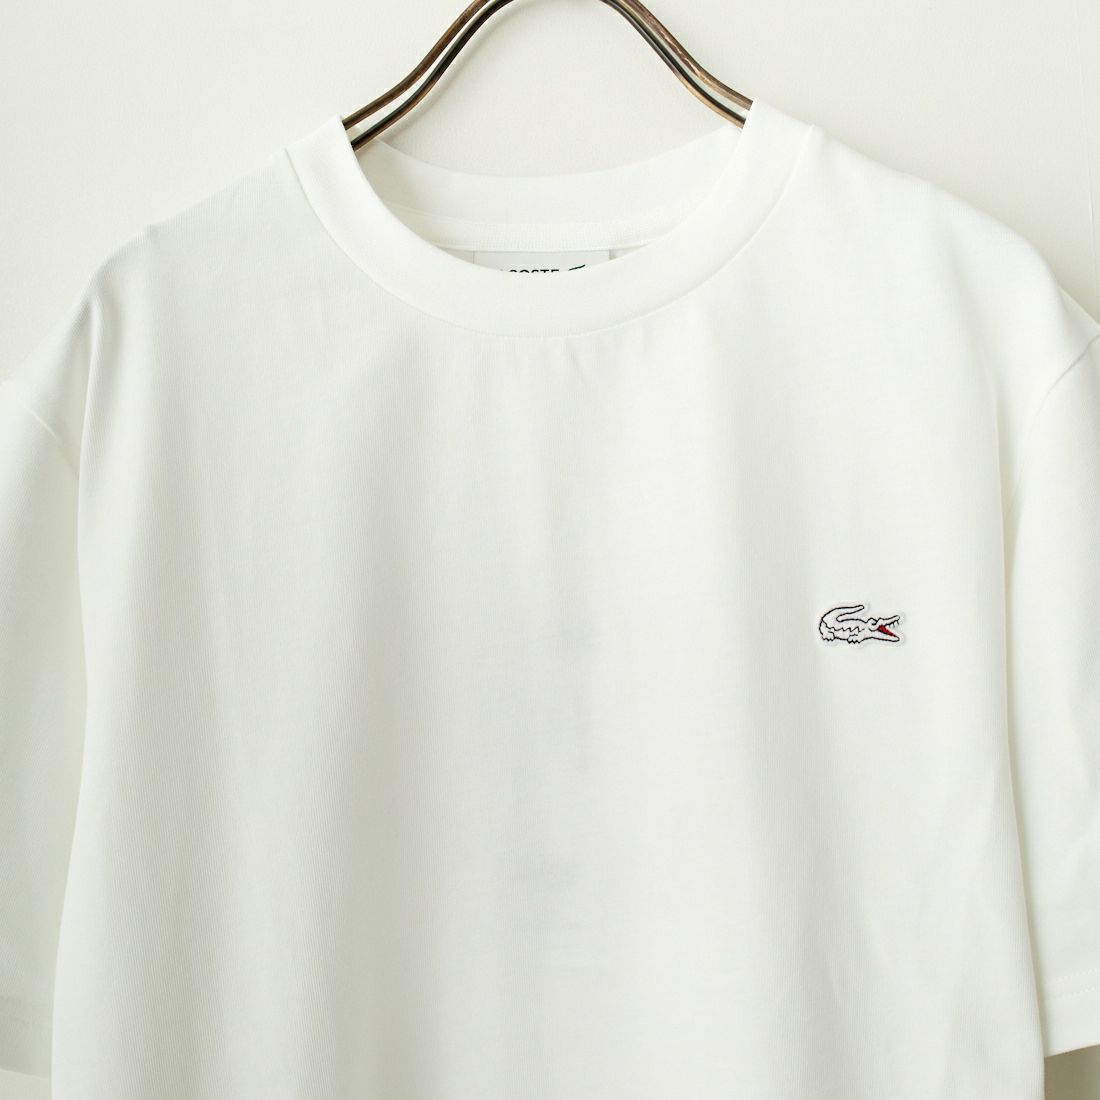 LACOSTE [ラコステ] クルーネックTシャツ [TH5582] 001 WHITE